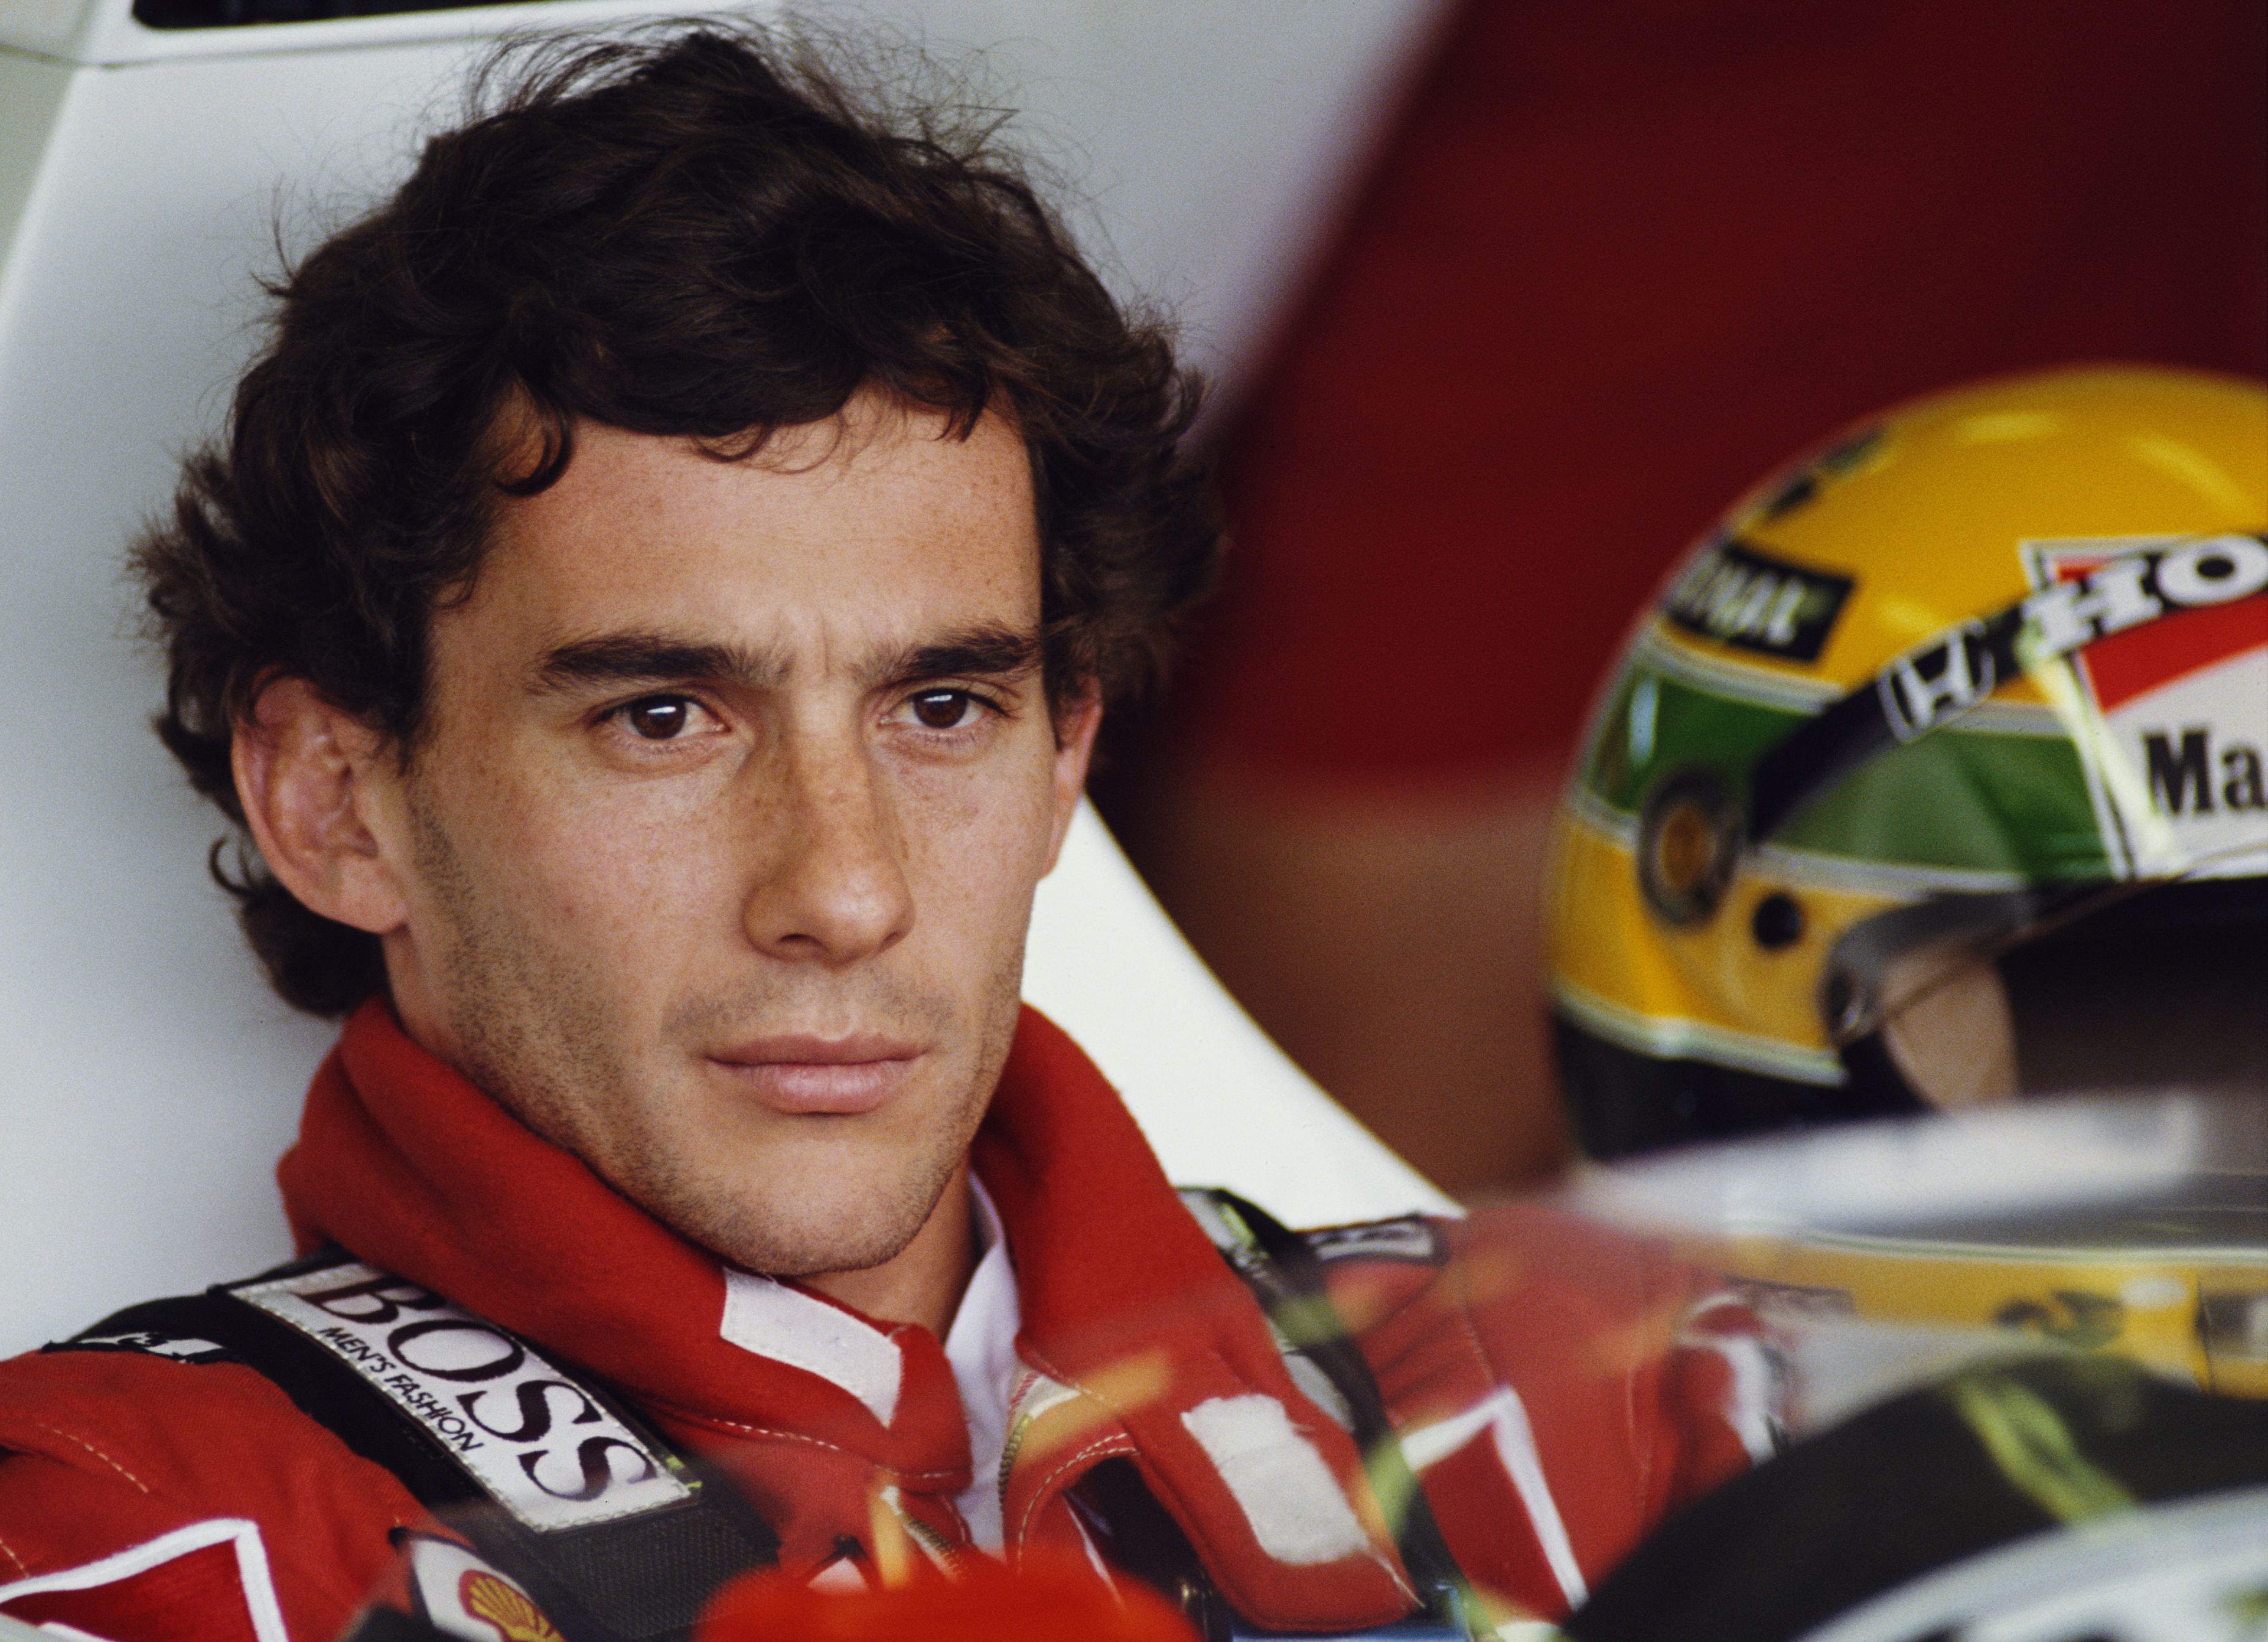 Az 1994. május 1-jén rendezett San Marinó-i Nagydíjon a brazil Ayrton Senna a betonfalnak csapódott, s több olyan sérülést is szenvedett, amelyek közül már egy is halálos volt / Fotó: Gettyimages